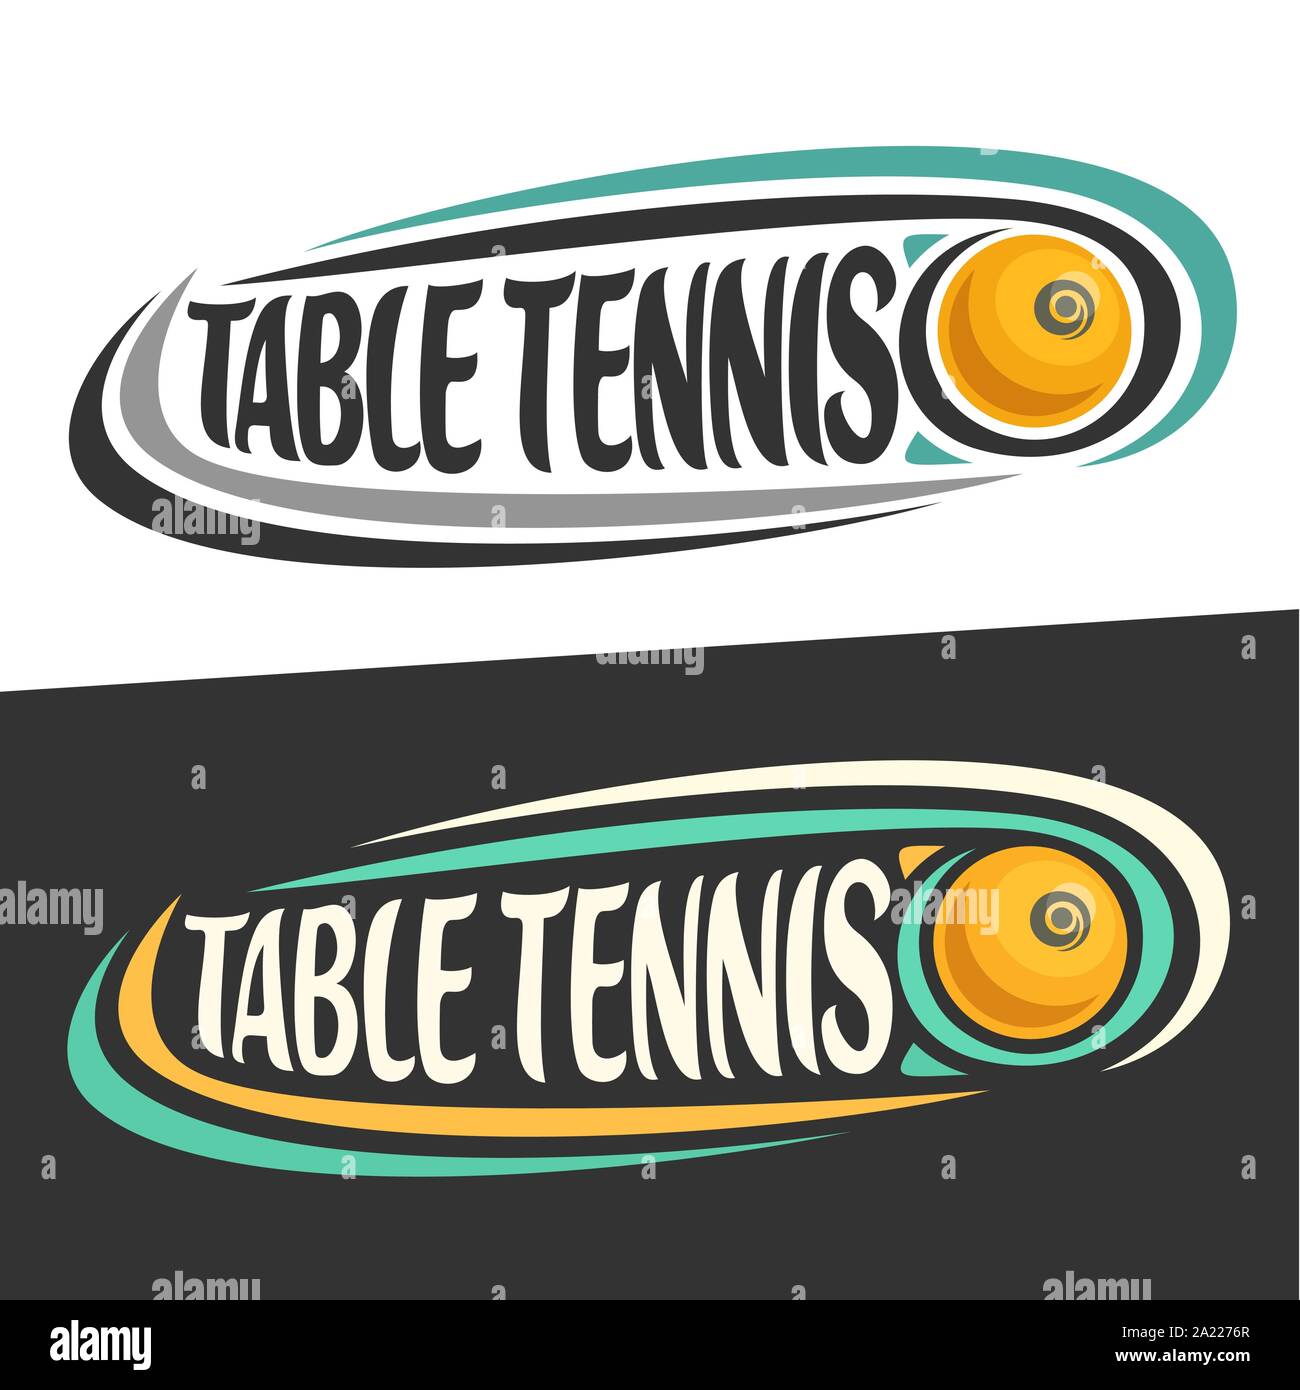 Vektor logos für Tischtennis sport, fliegende gelbe Tischtennisball und  handschriftlichen Worte - Tischtennis auf Schwarz, geschwungene Linien rund  um kreative typograp Stock-Vektorgrafik - Alamy